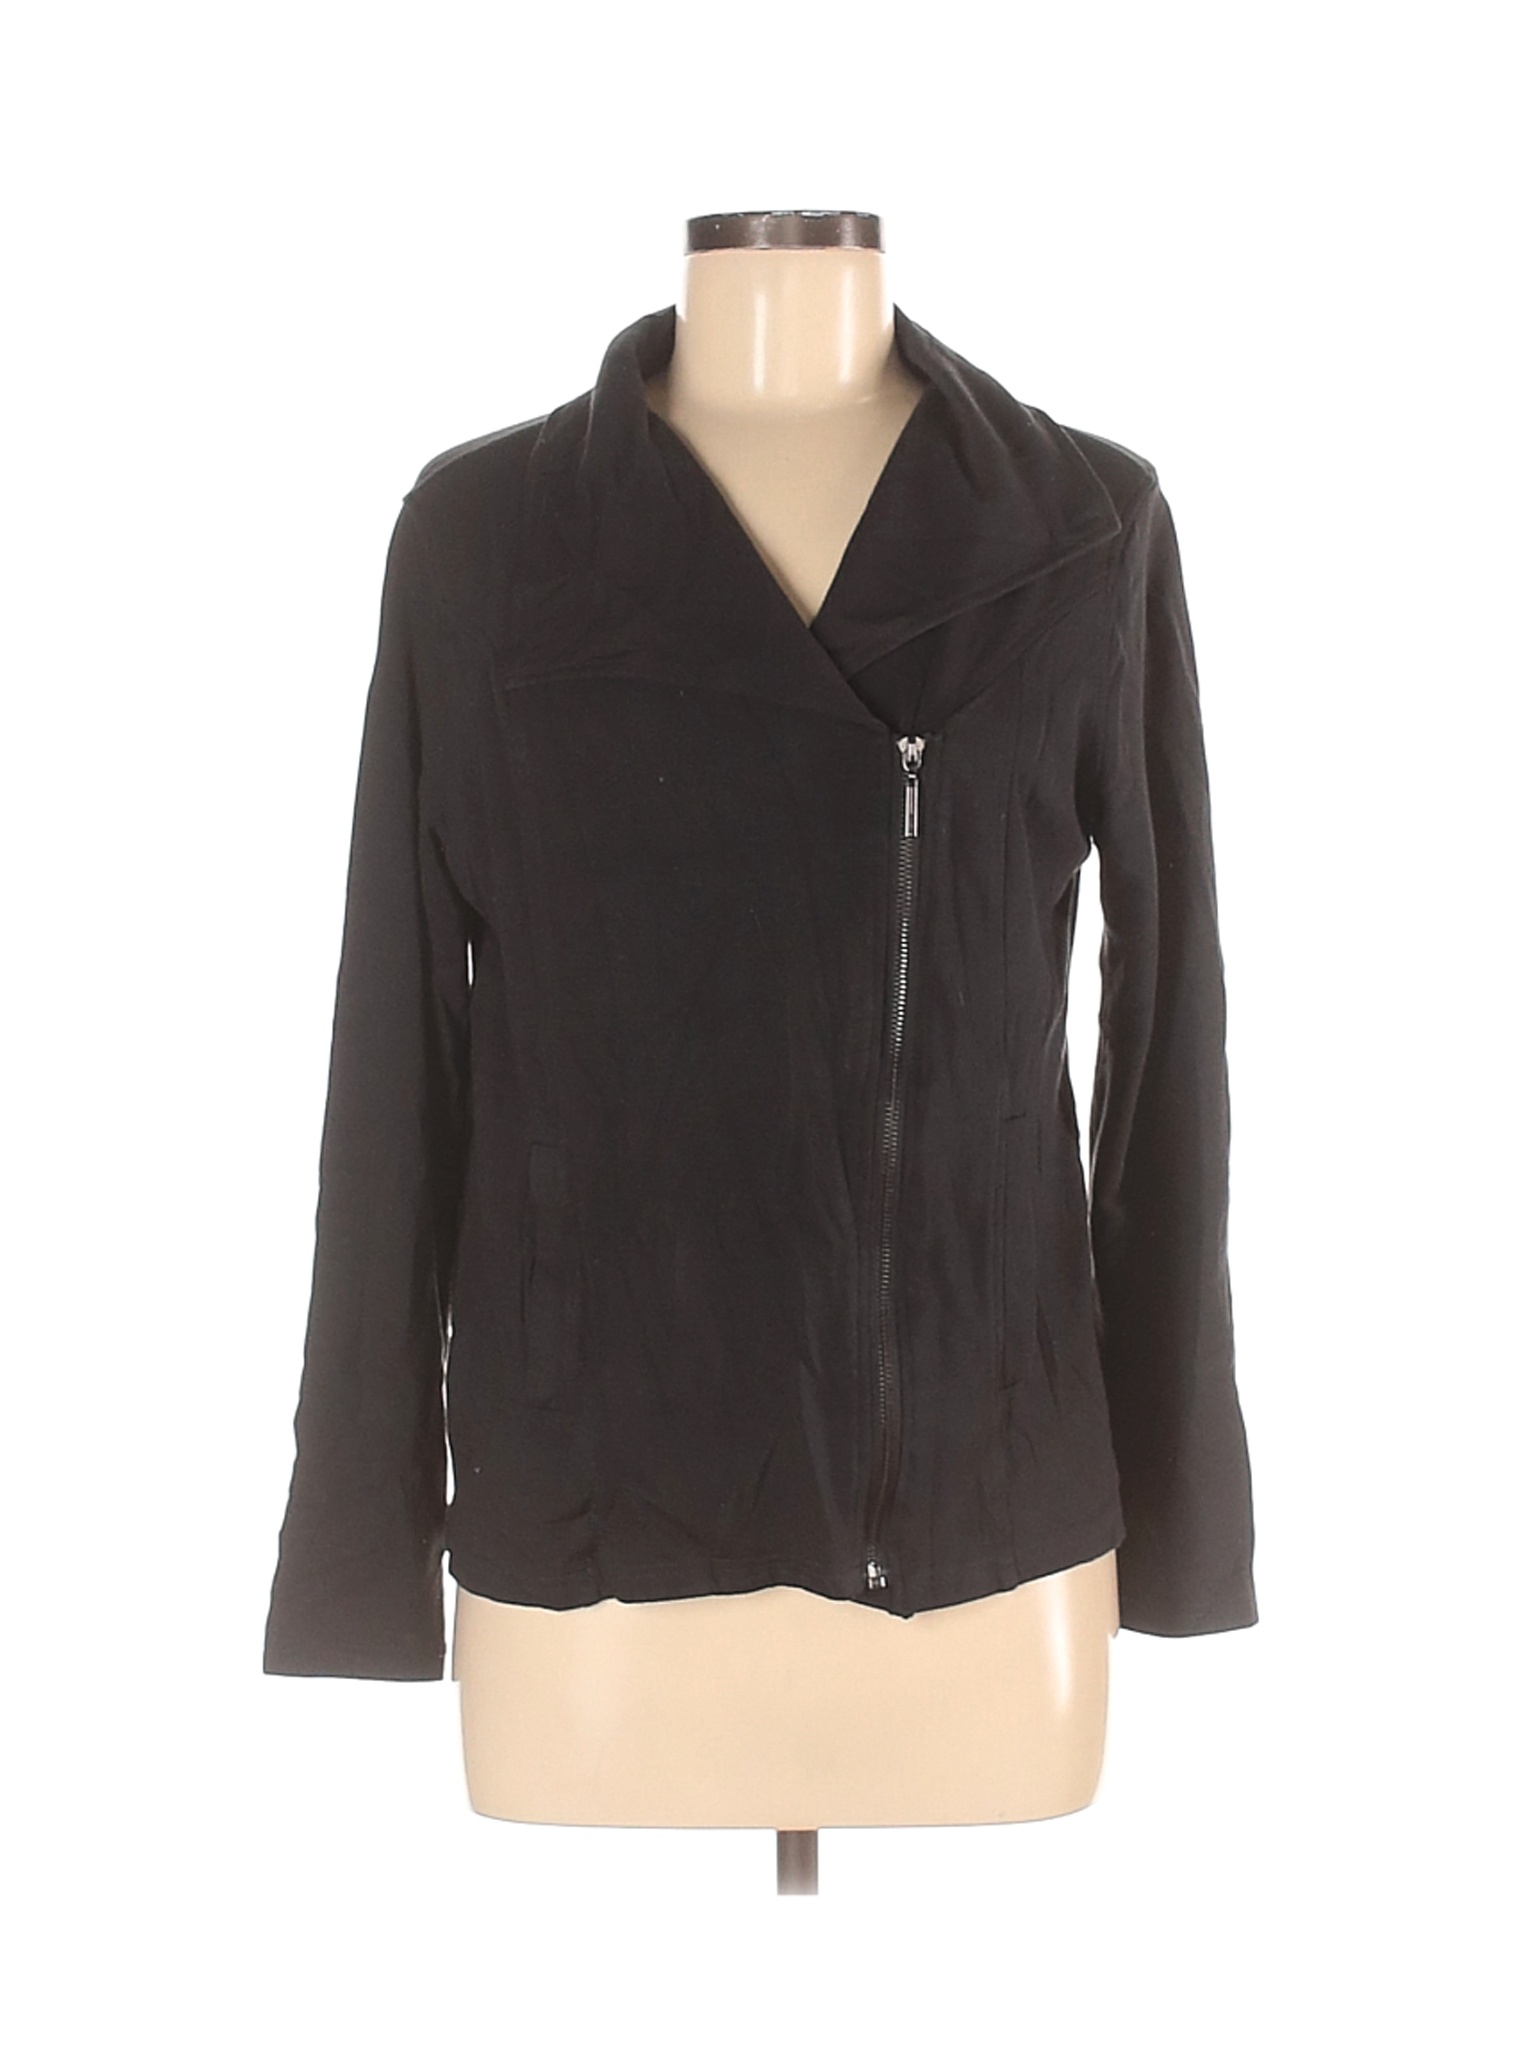 Kensie Women Black Jacket M | eBay